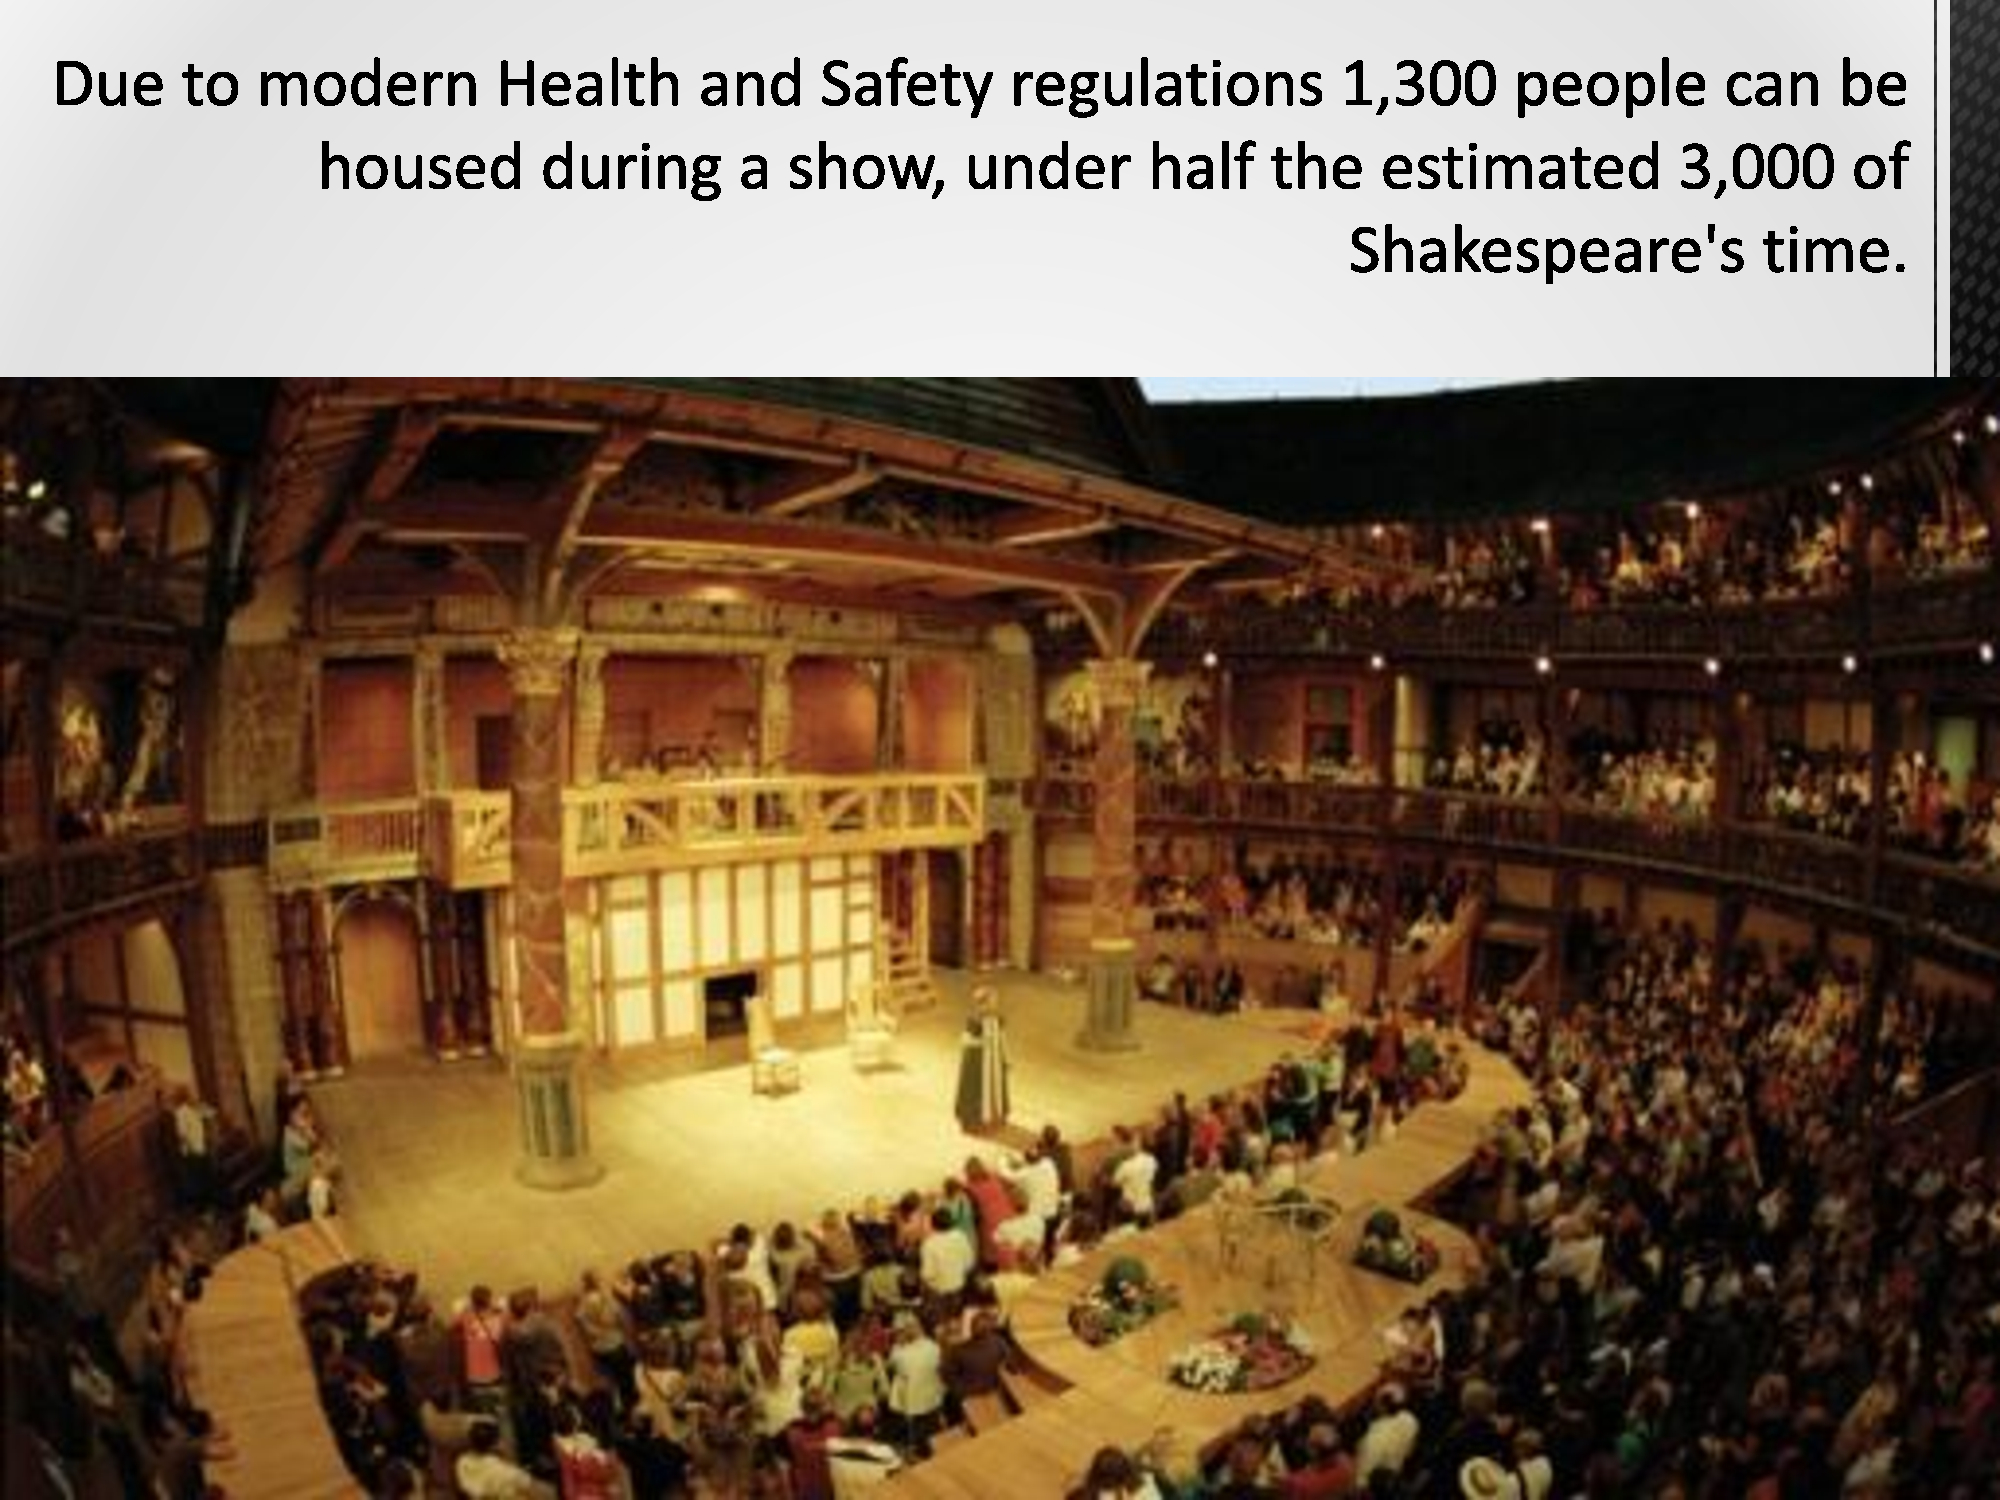 Shakespeare s theatre. Театр Глобус Шекспира. Уильям Шекспир театр Глобус. Театр Глобус Шекспира 1599. Театр Глобус Шекспира 16 век.